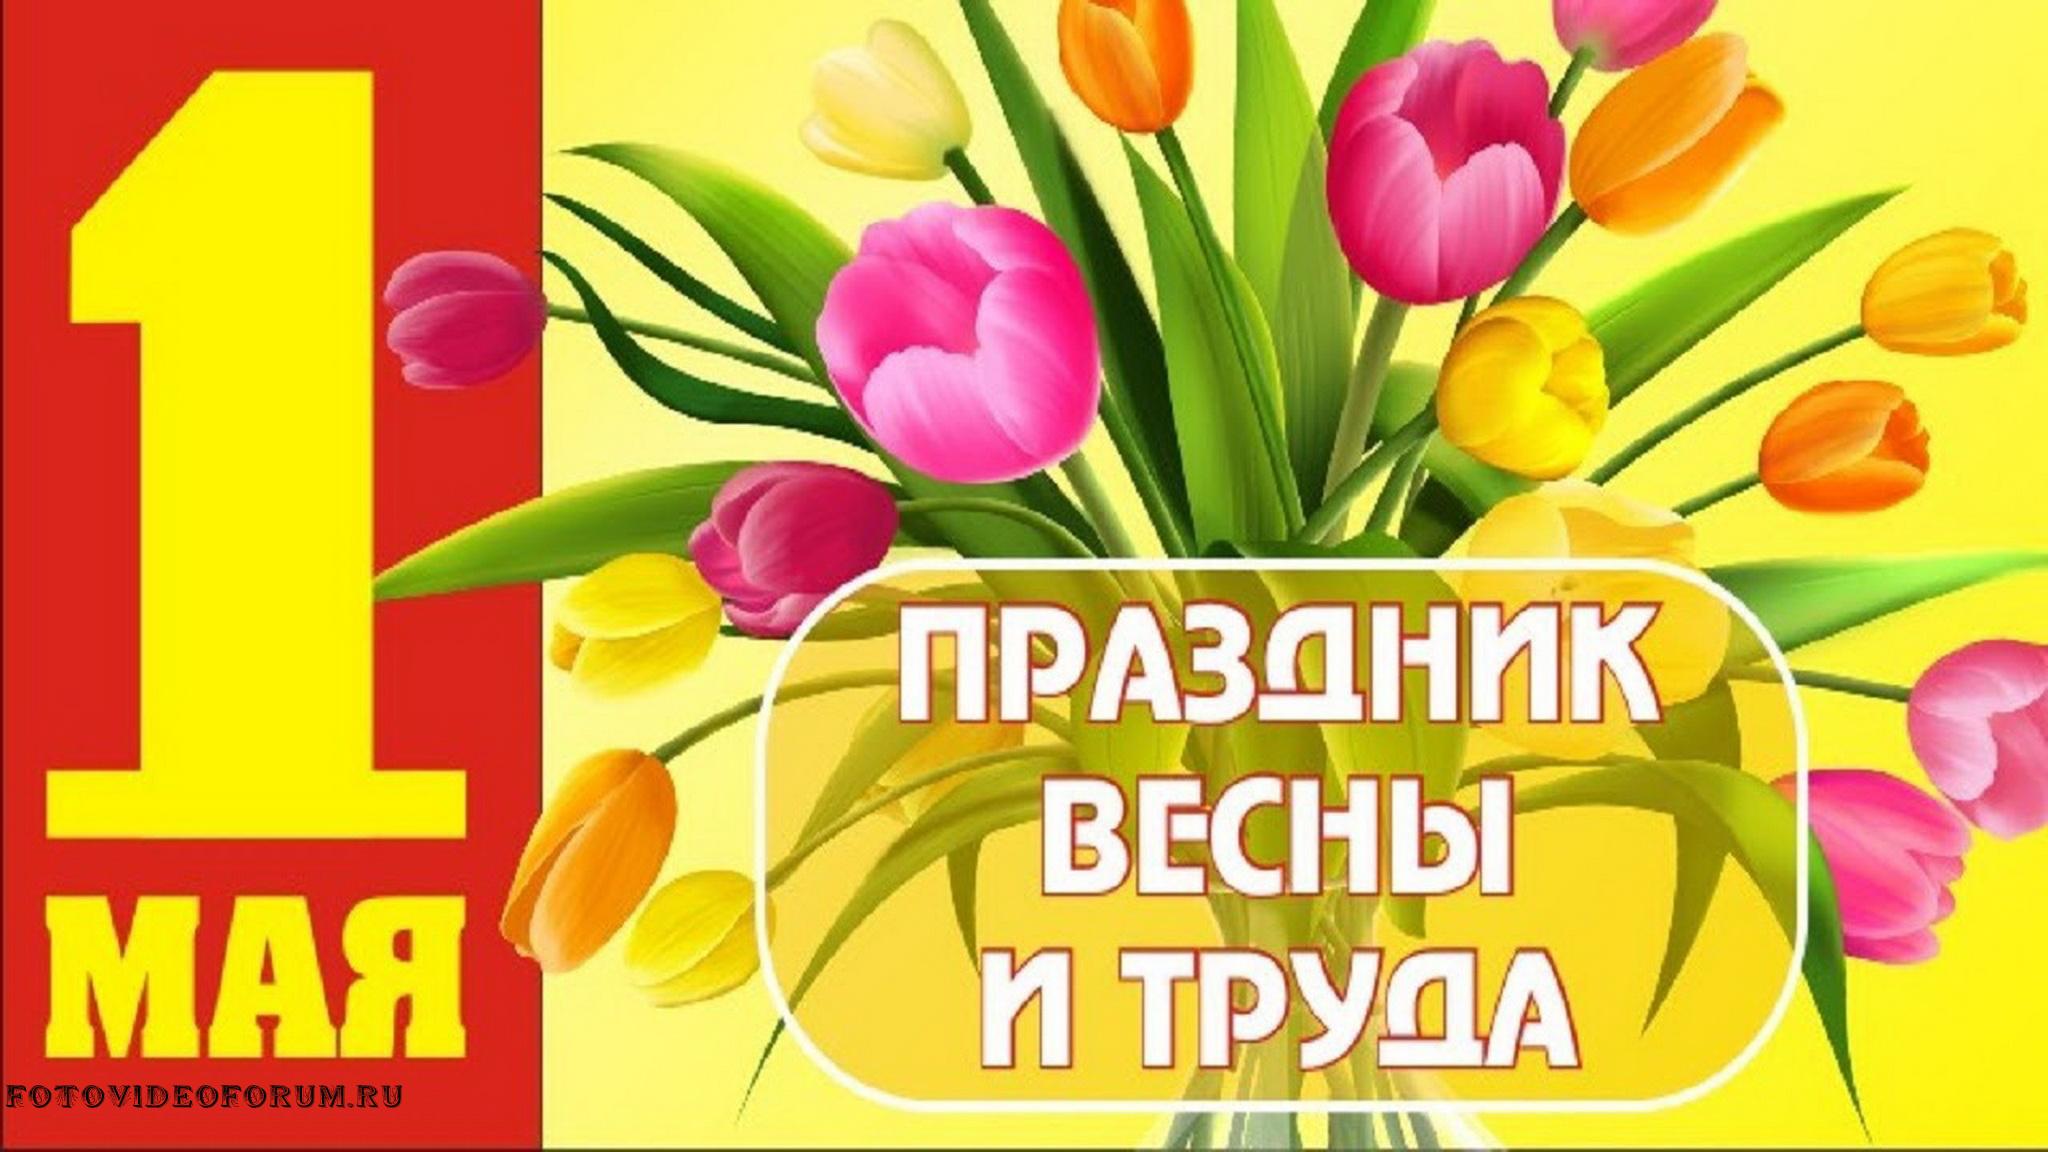 1 мая содержание. Поздравление с 1 мая. Открытки с 1 мая. 1 Мая праздник весны и труда. Поздравления с первым мая.